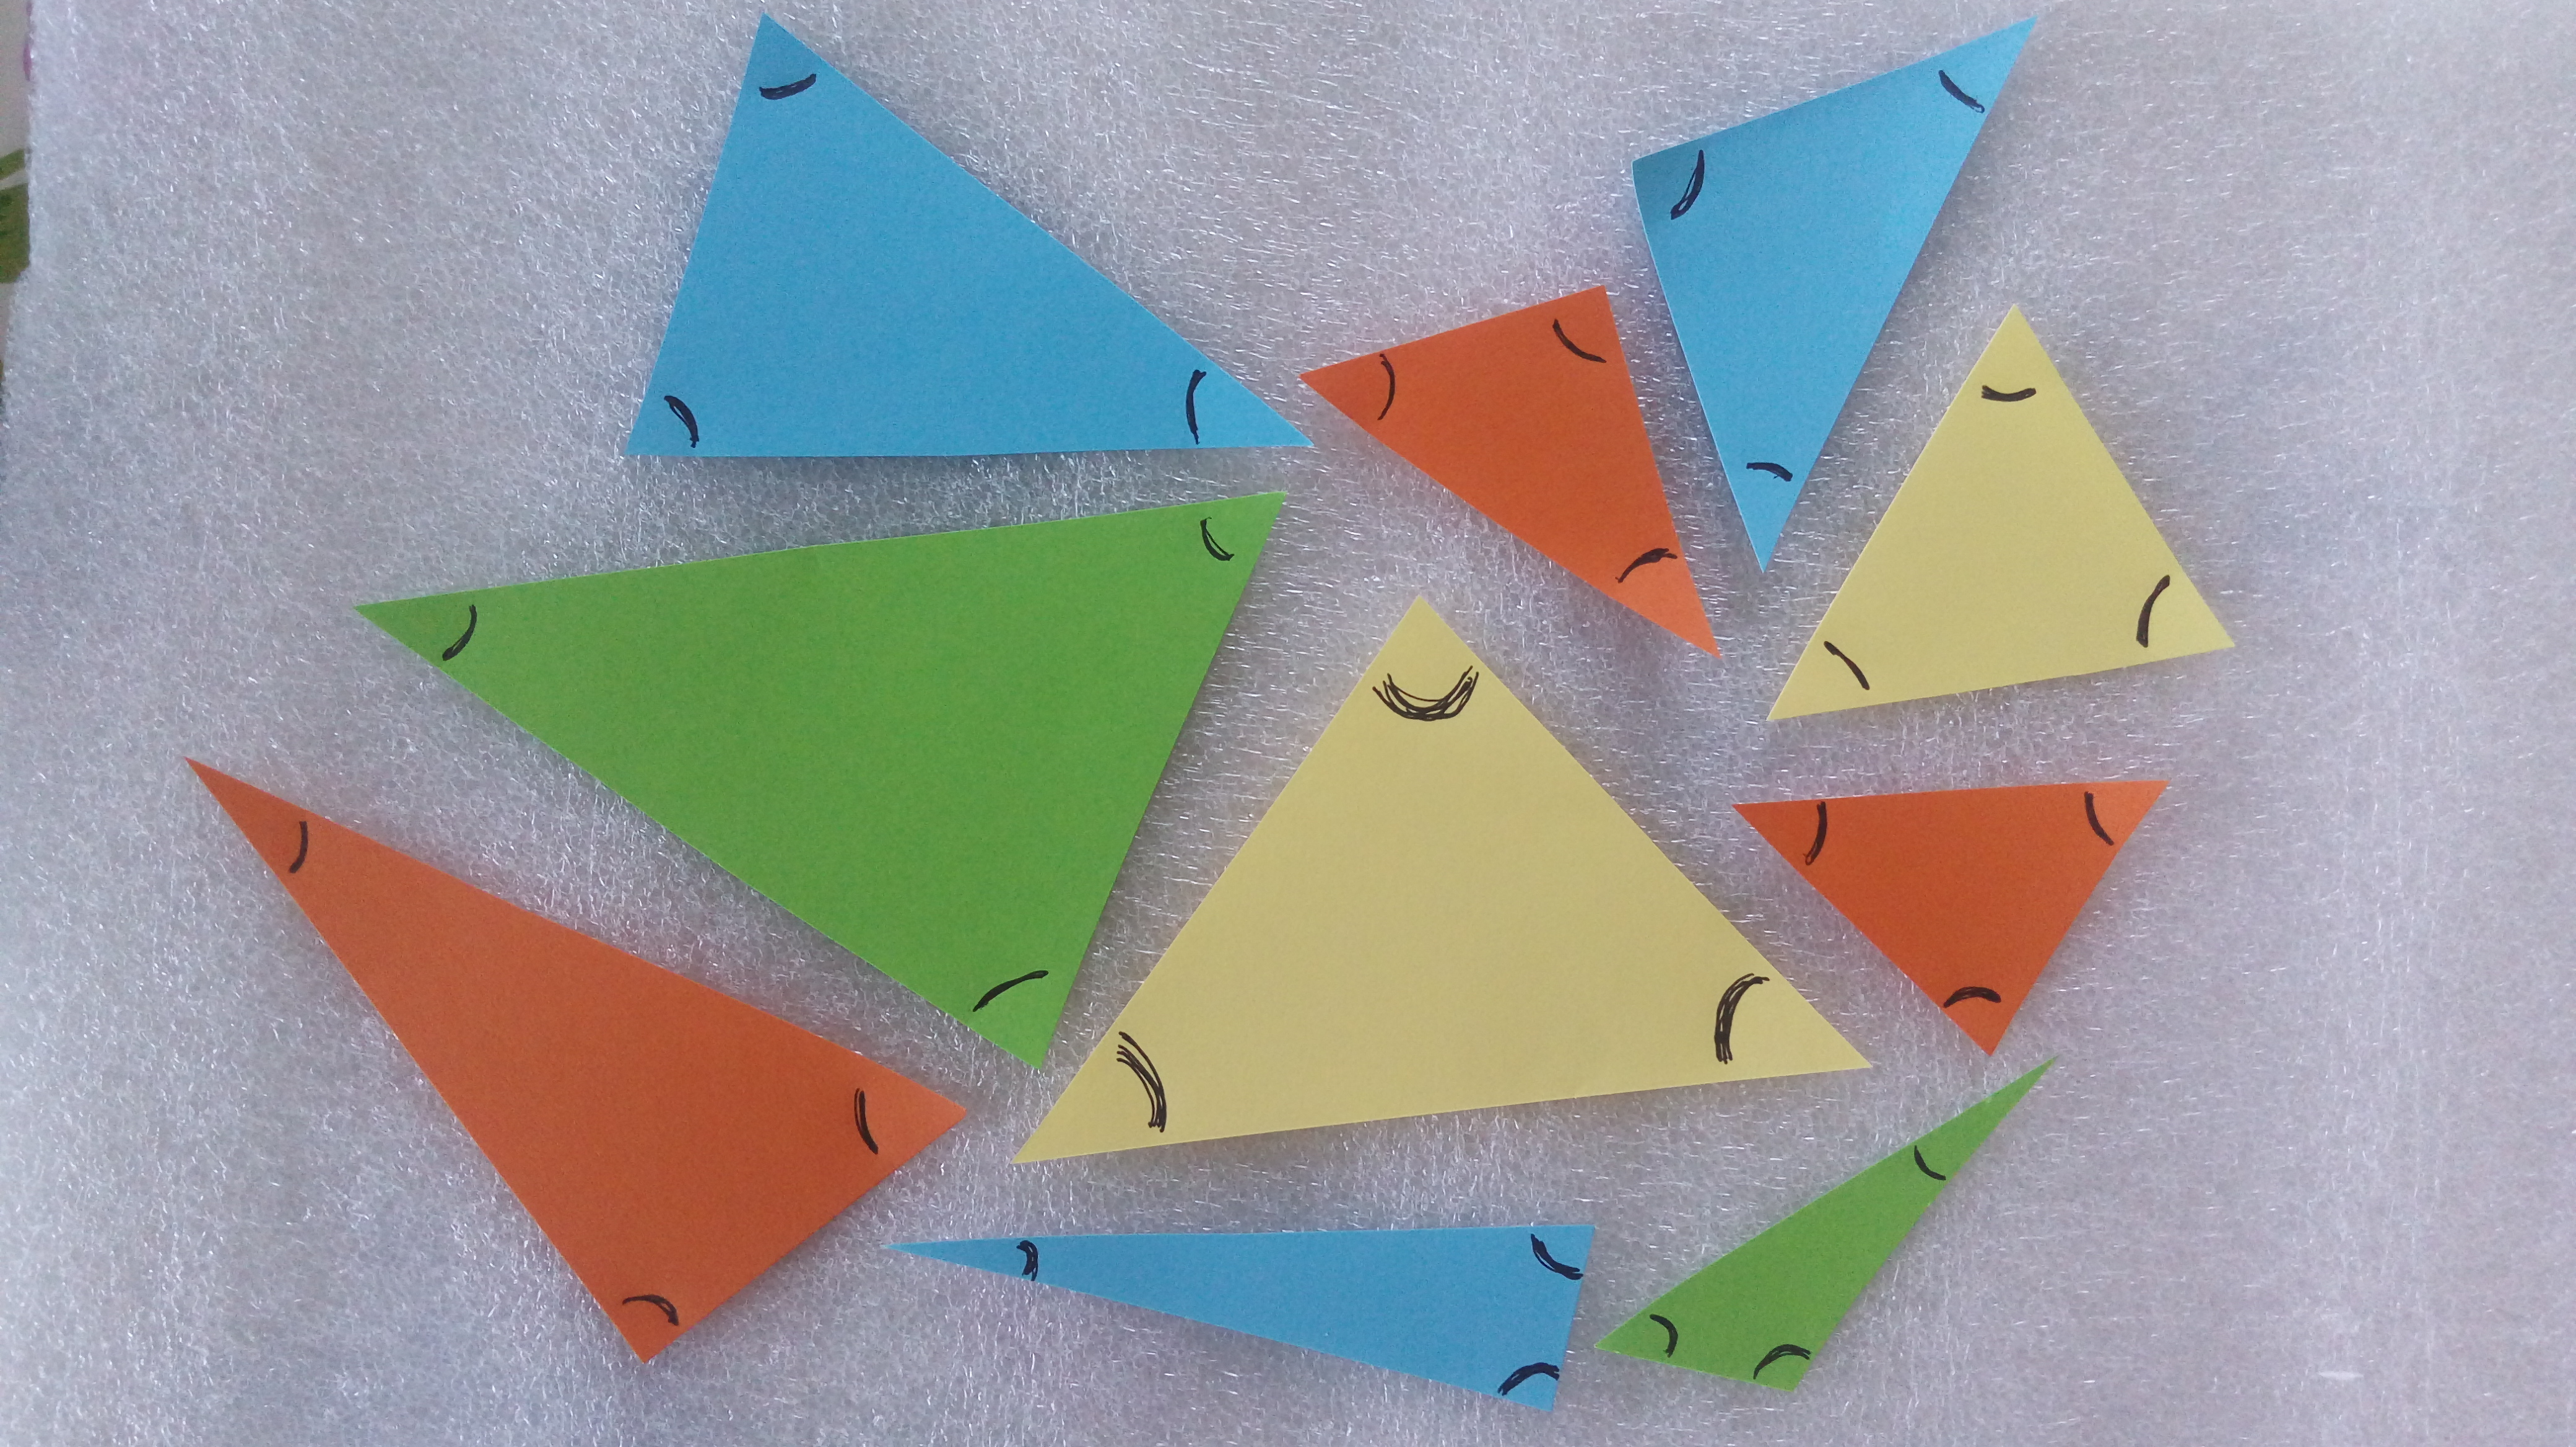 En la imagen aparecen diez triángulos con distintas características en cuanto a la medida de sus lados y sus ángulos (hay triángulos mas "pequeños" y otros más "grandes", algunos tienen ángulos agudos, rectos u obtusos). En cada triángulo se han marcado con un arco con bolígrafo negro, sus tres ángulos.